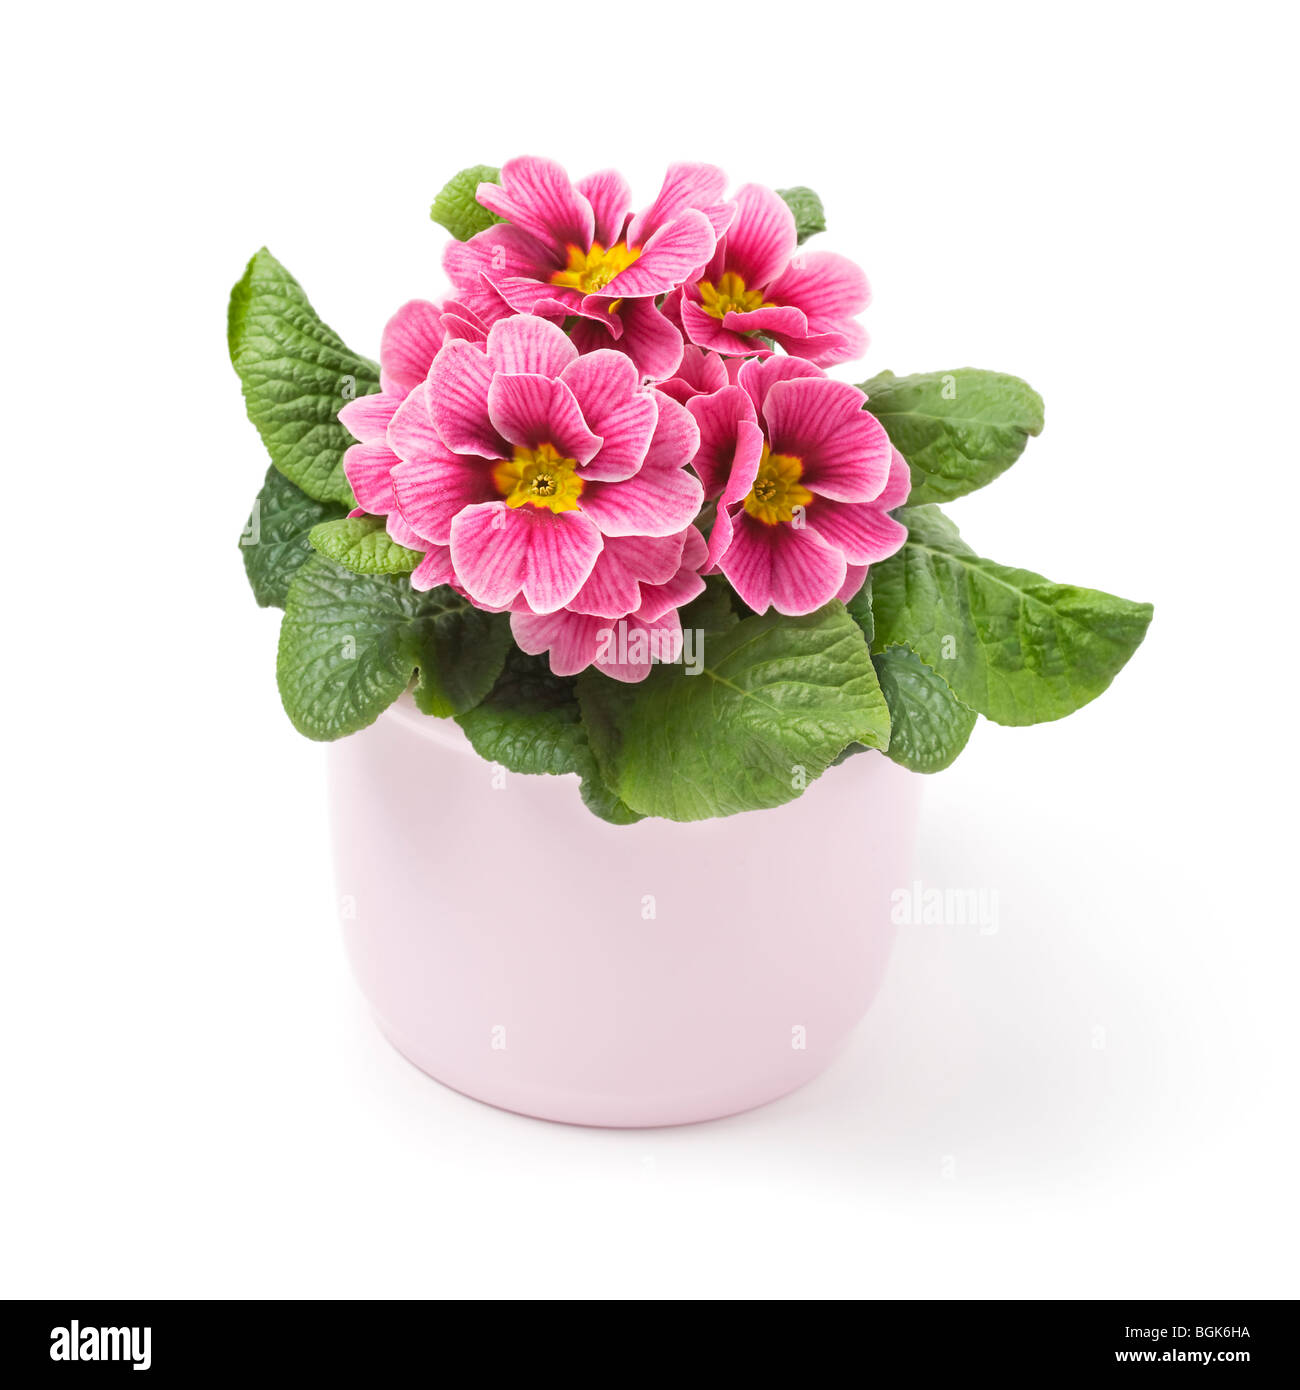 Pink primrose in ceramic pot Stock Photo